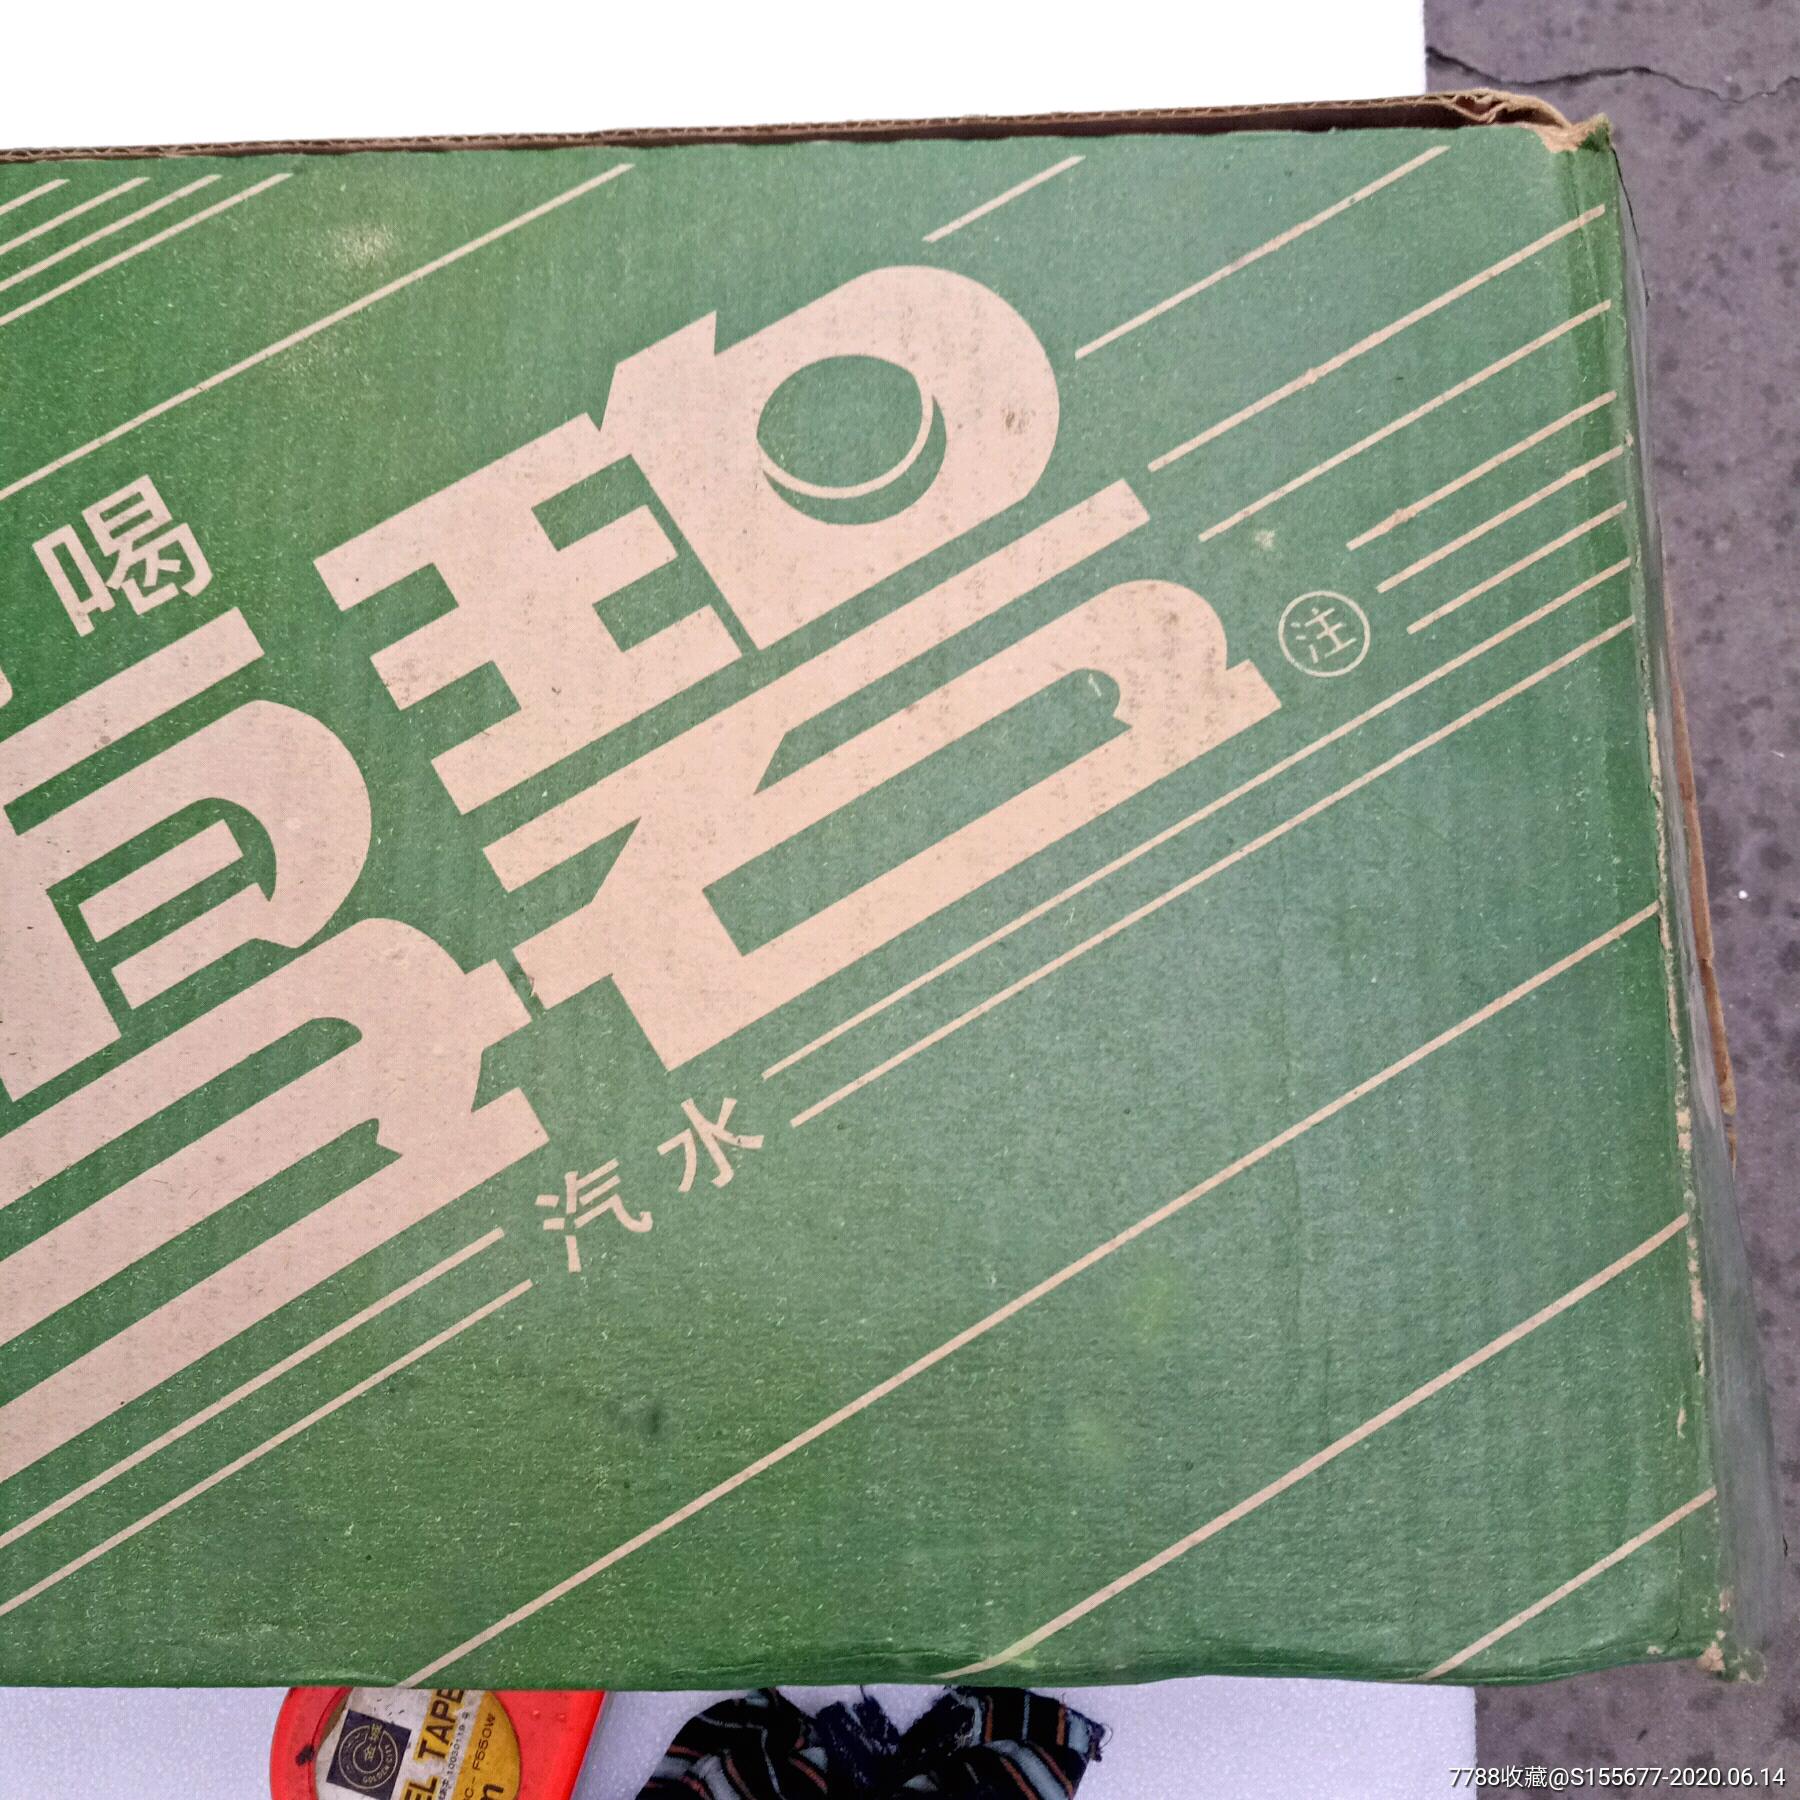 八十年代可口可乐雪碧包装纸箱,已罕见